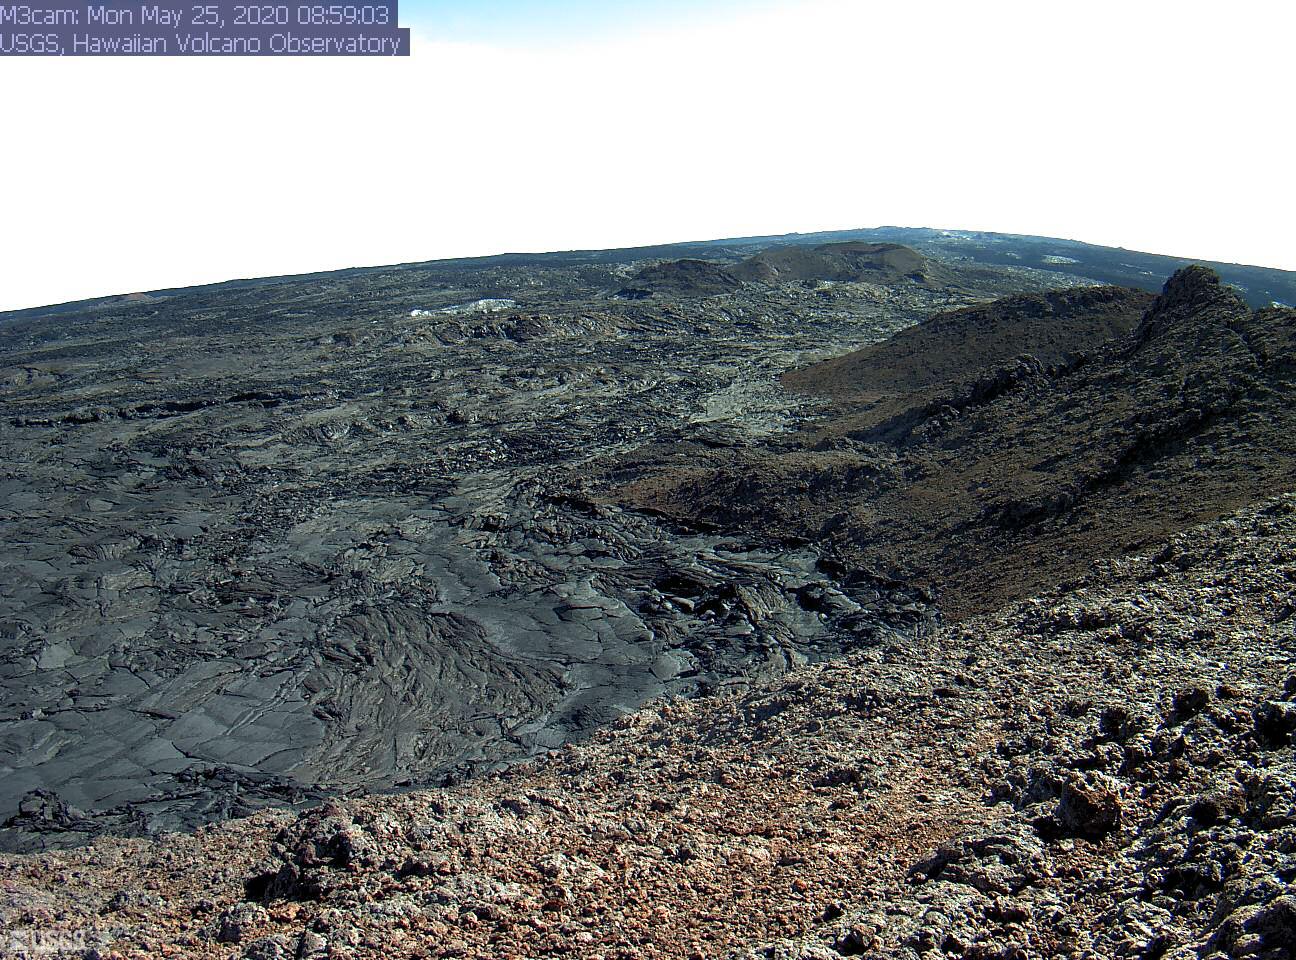 Southwest Rift Zone at Mauna Loa volcano (image: HVO)